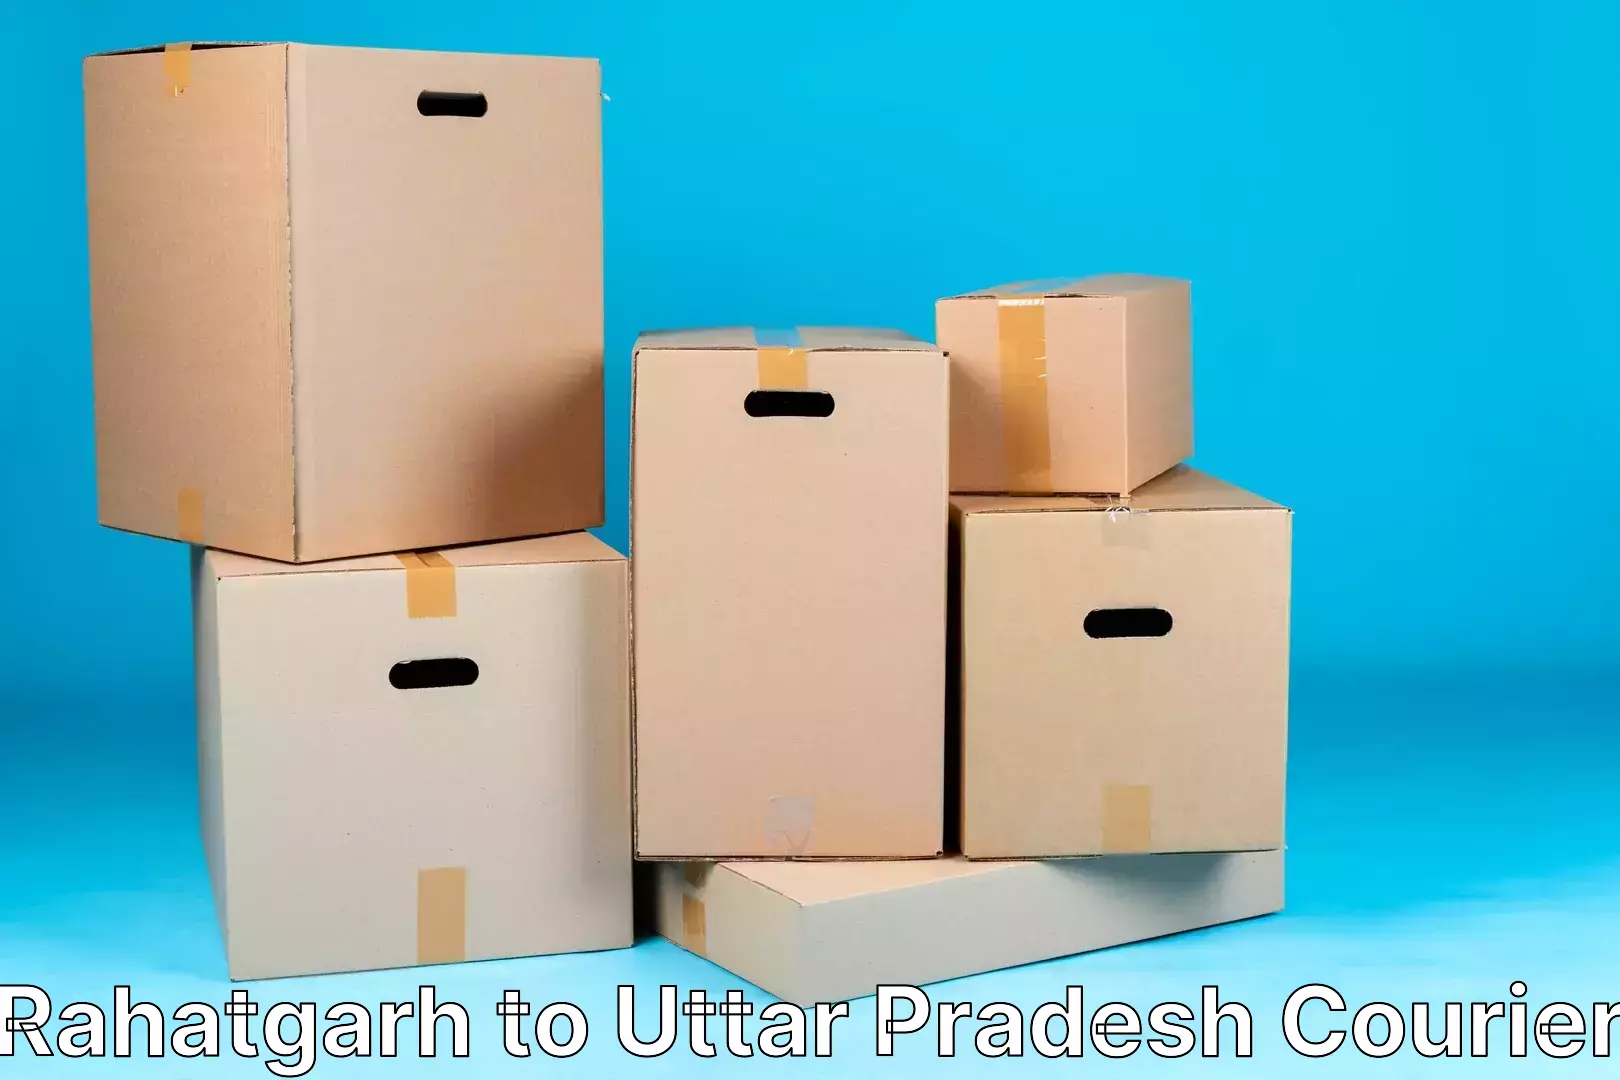 Premium courier services Rahatgarh to Uttar Pradesh